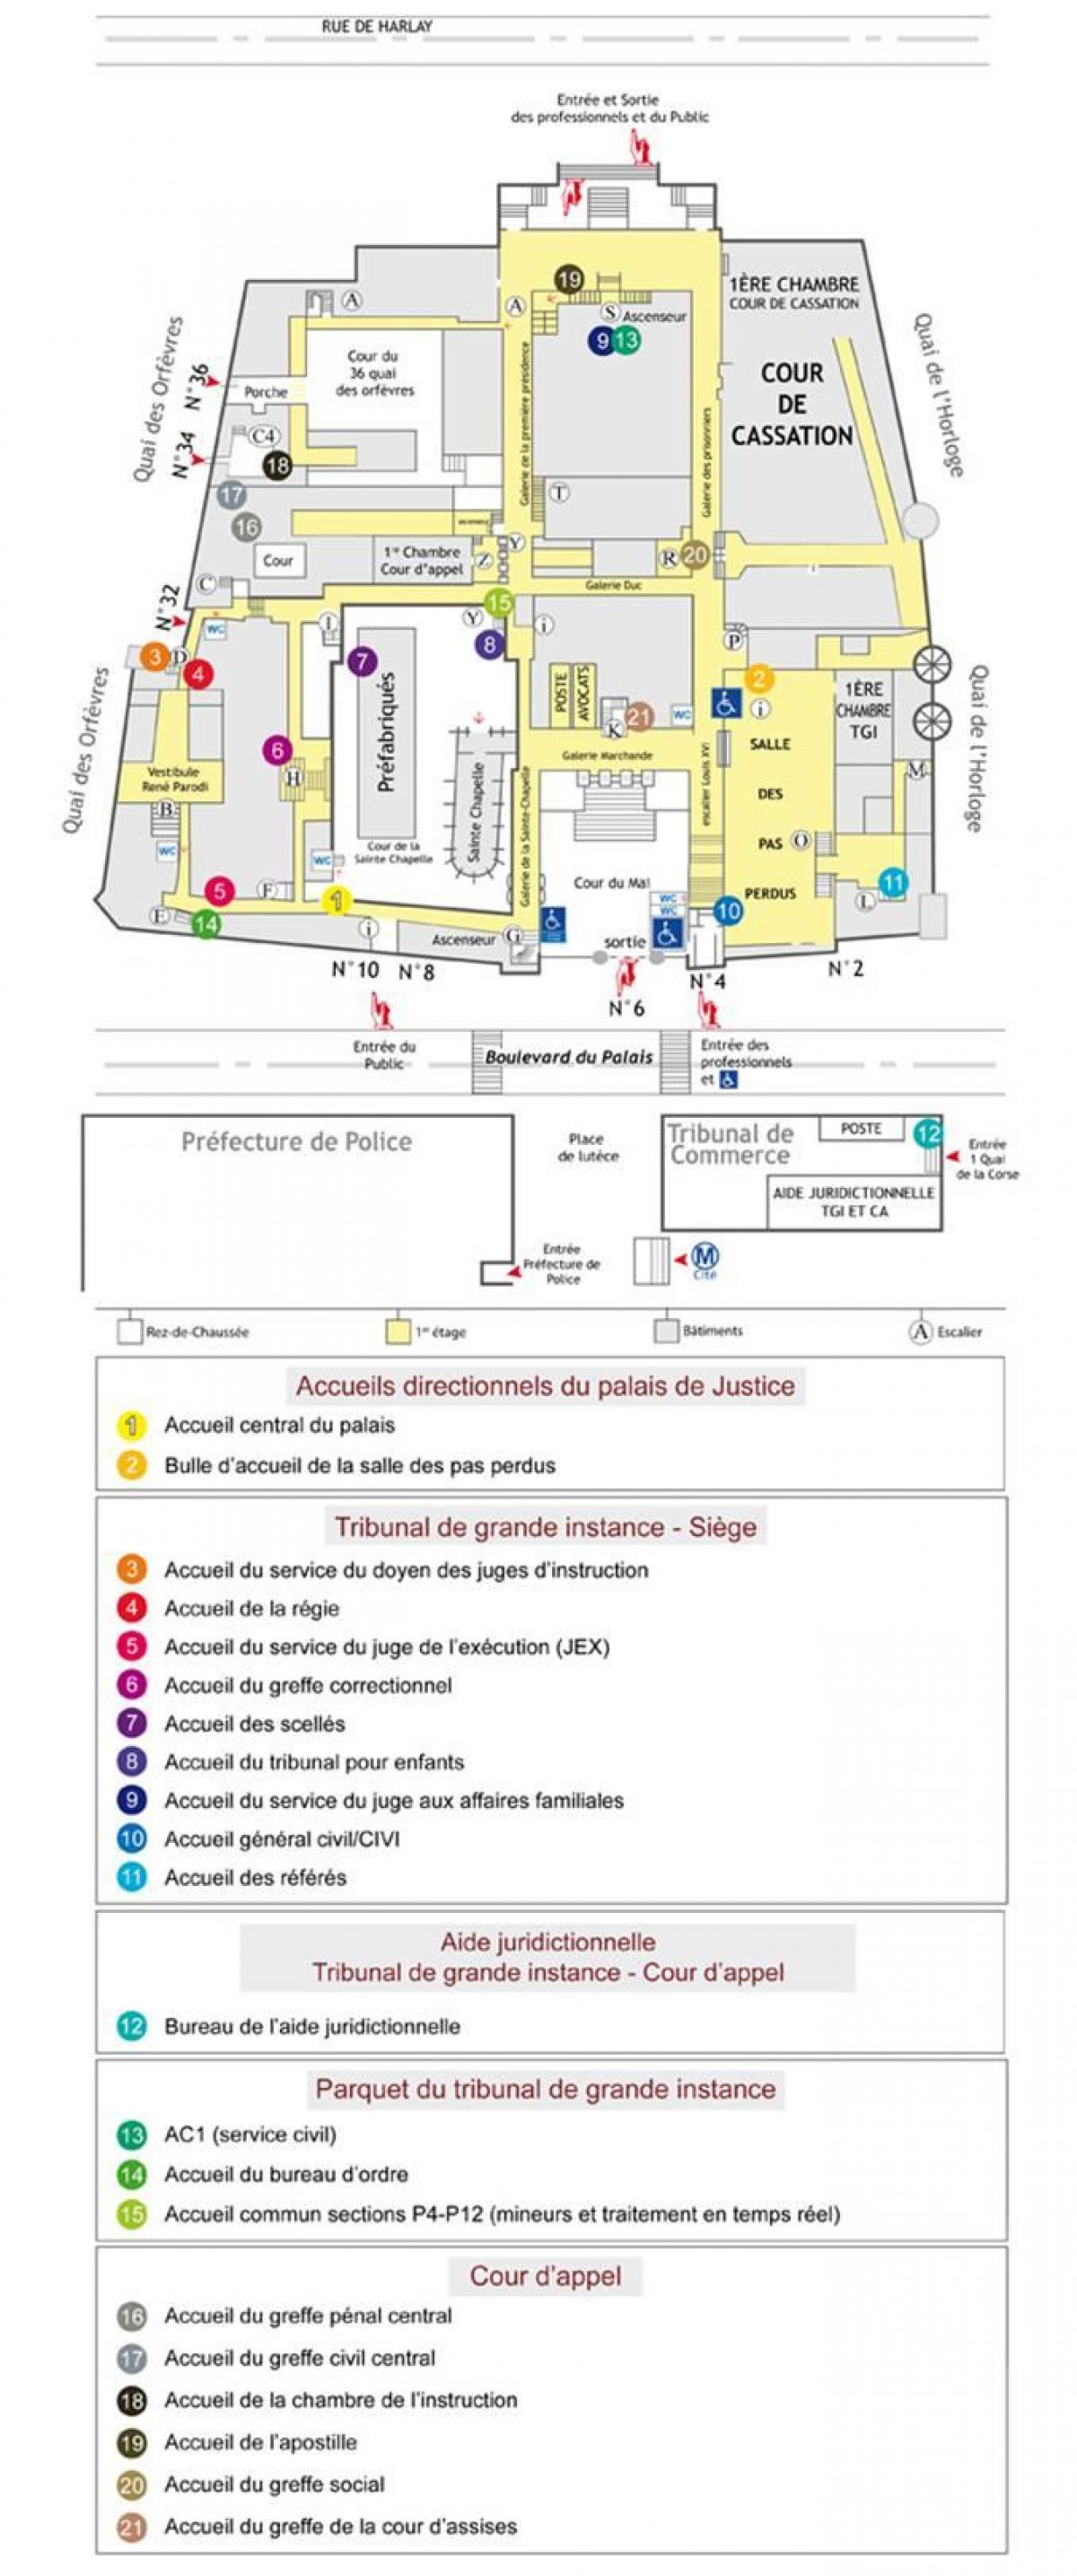 نقشه از د کاخ دادگستری پاریس